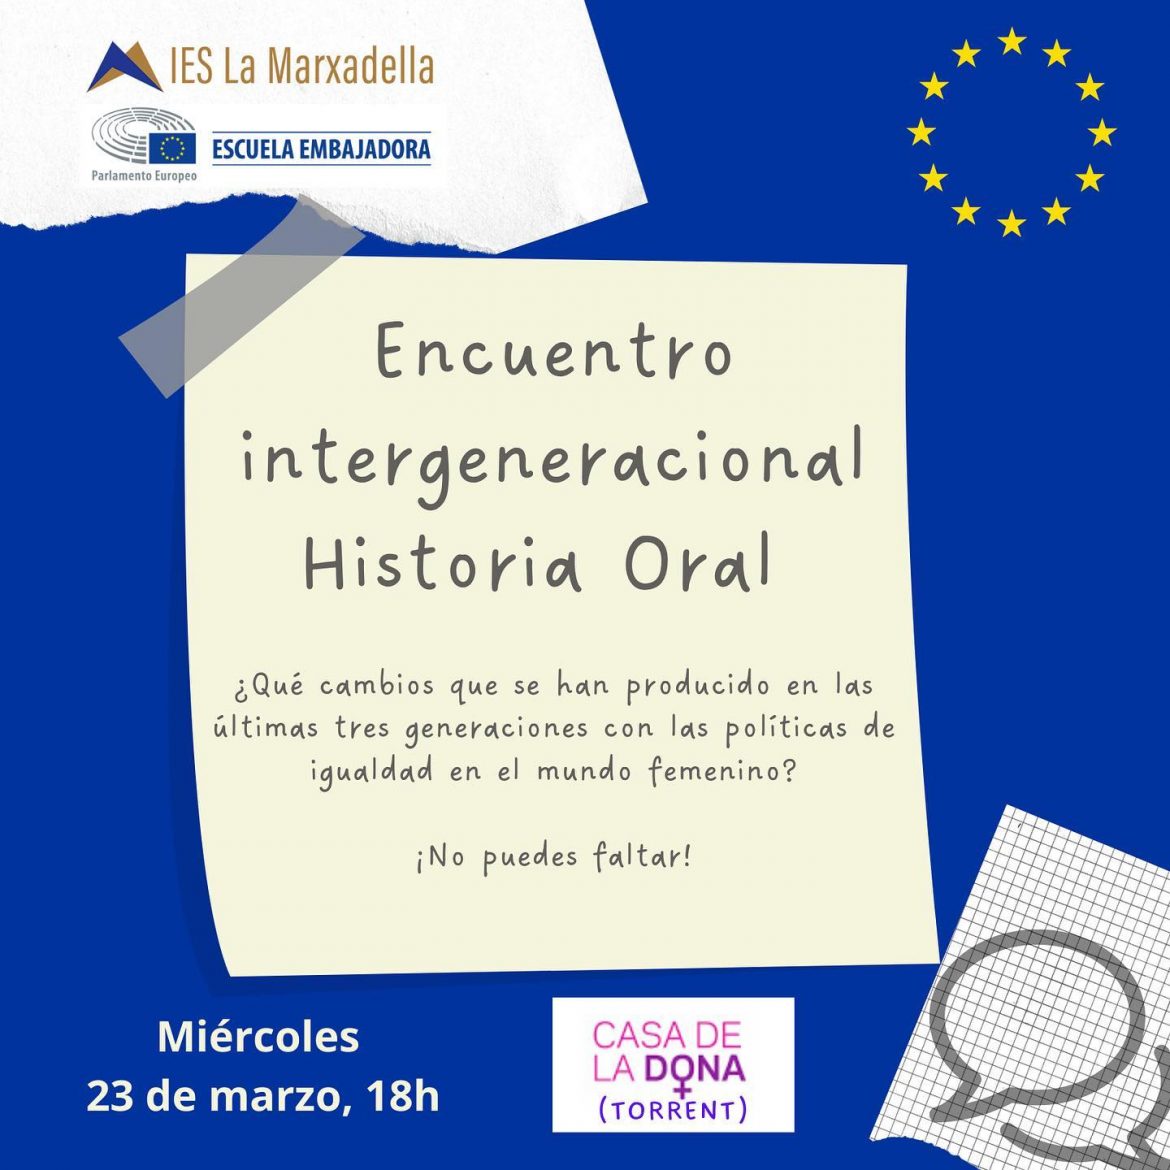 El IES La Marxadella organiza un encuentro intergeneracional sobre los avances producidos por el feminismo